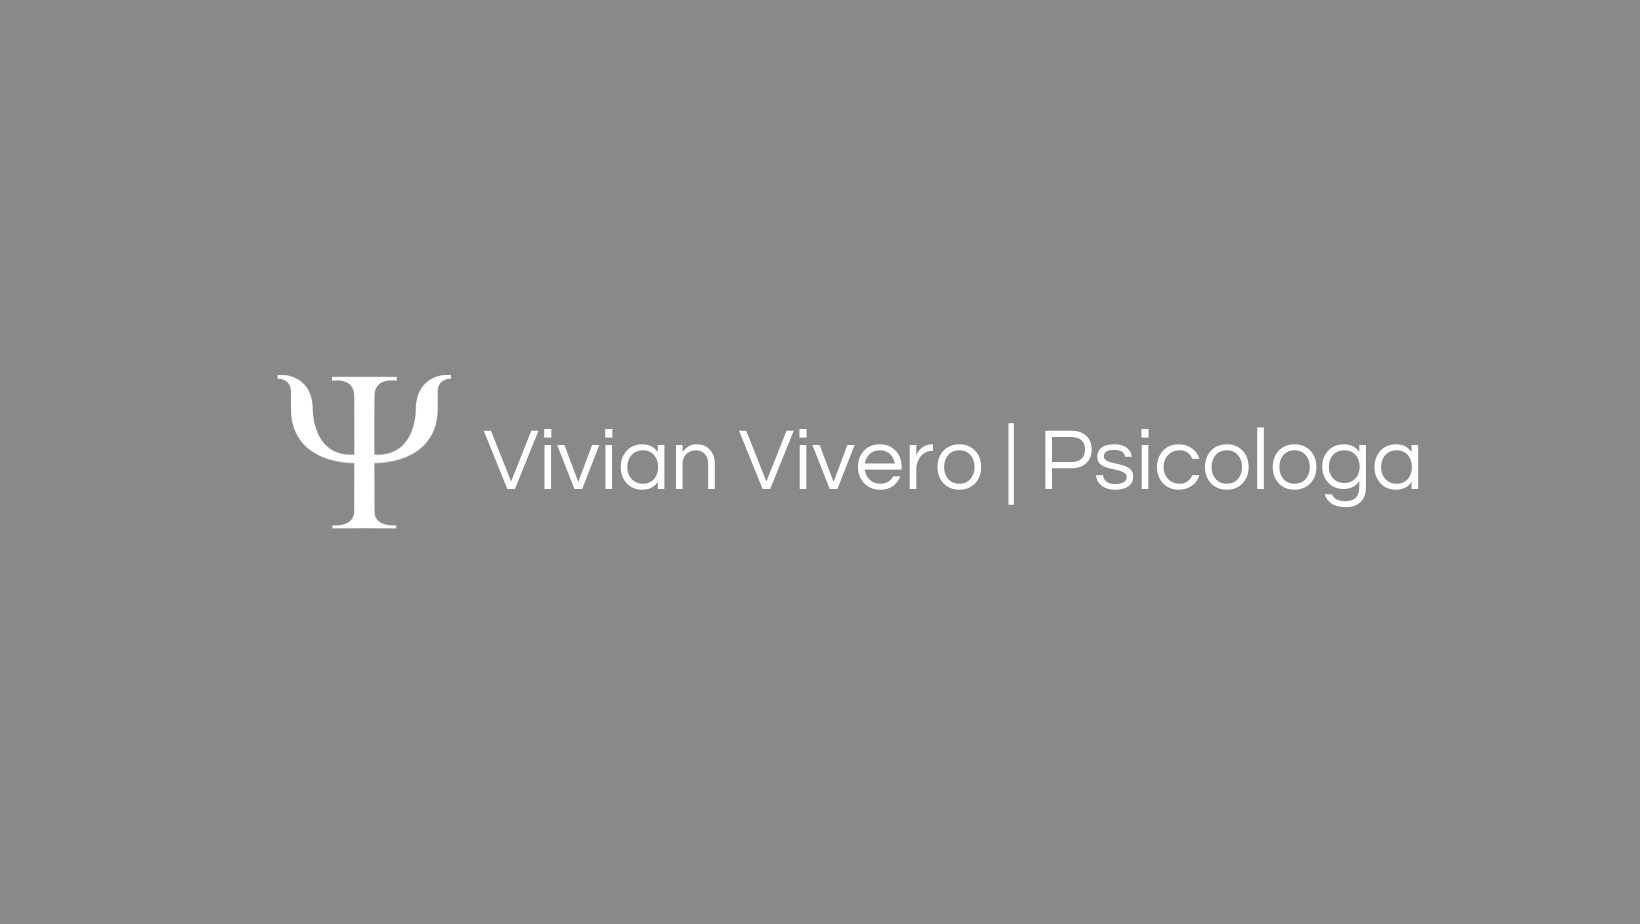 Psicologa Vivian Vivero